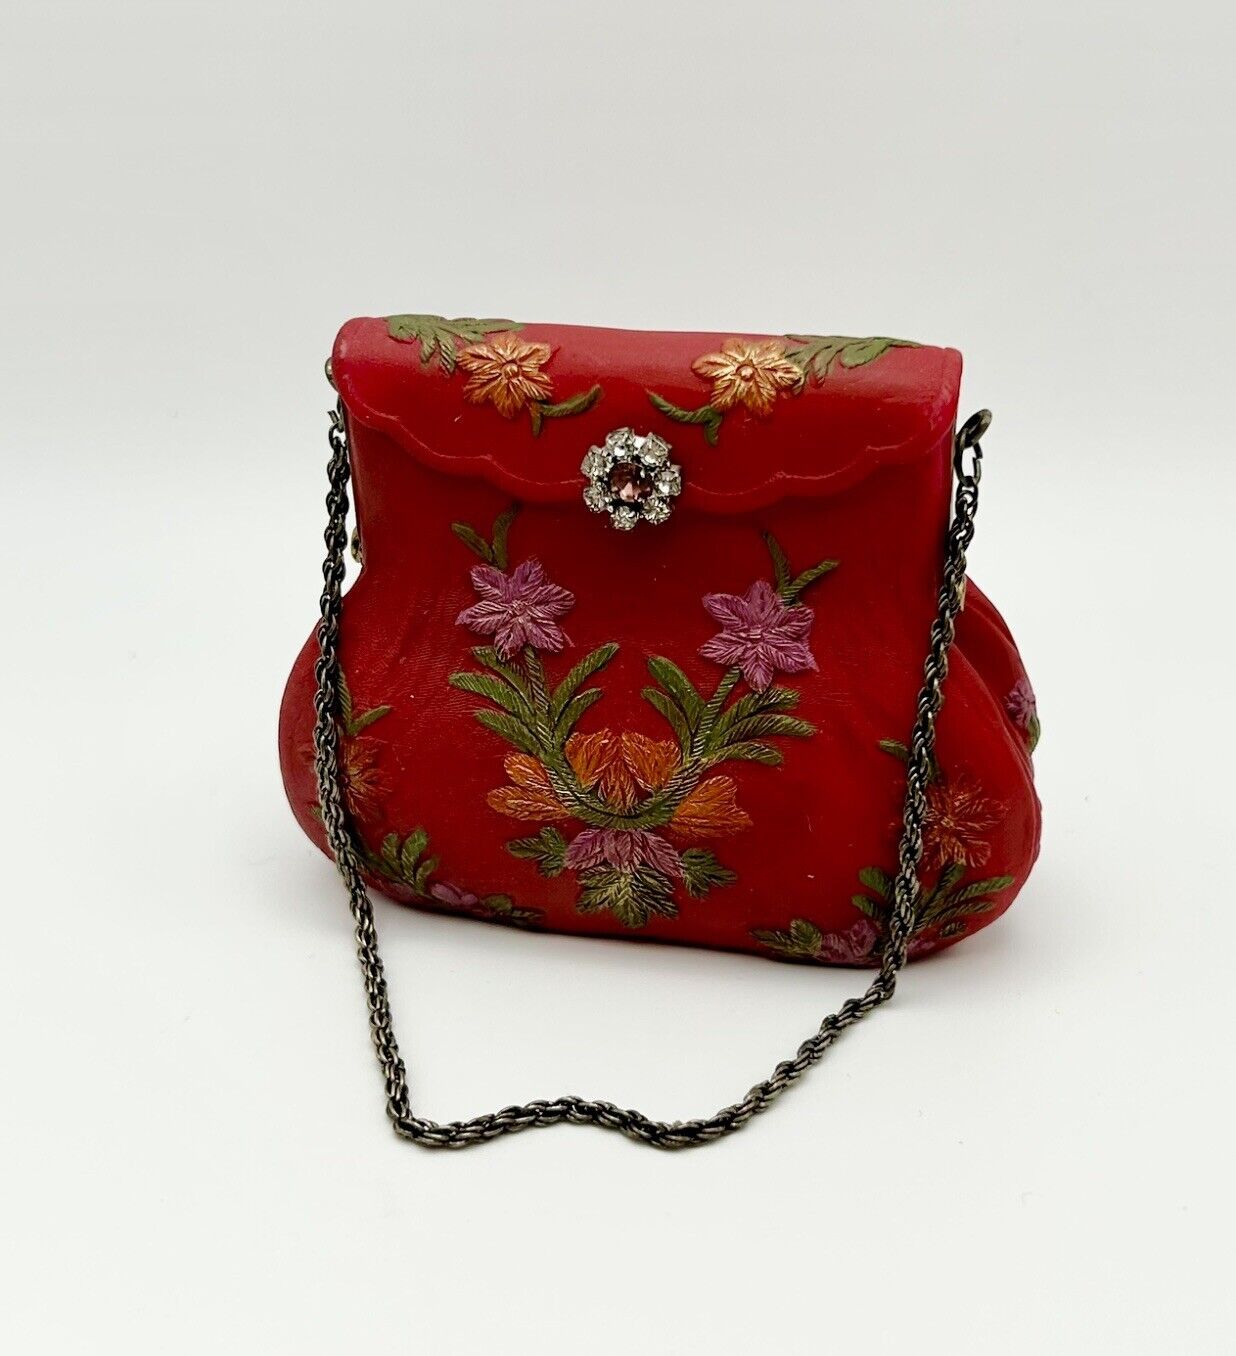 Nostalgia Imports Red Handbag Gem Clasp  2.75” W x 2” H x 1” D, Figurine